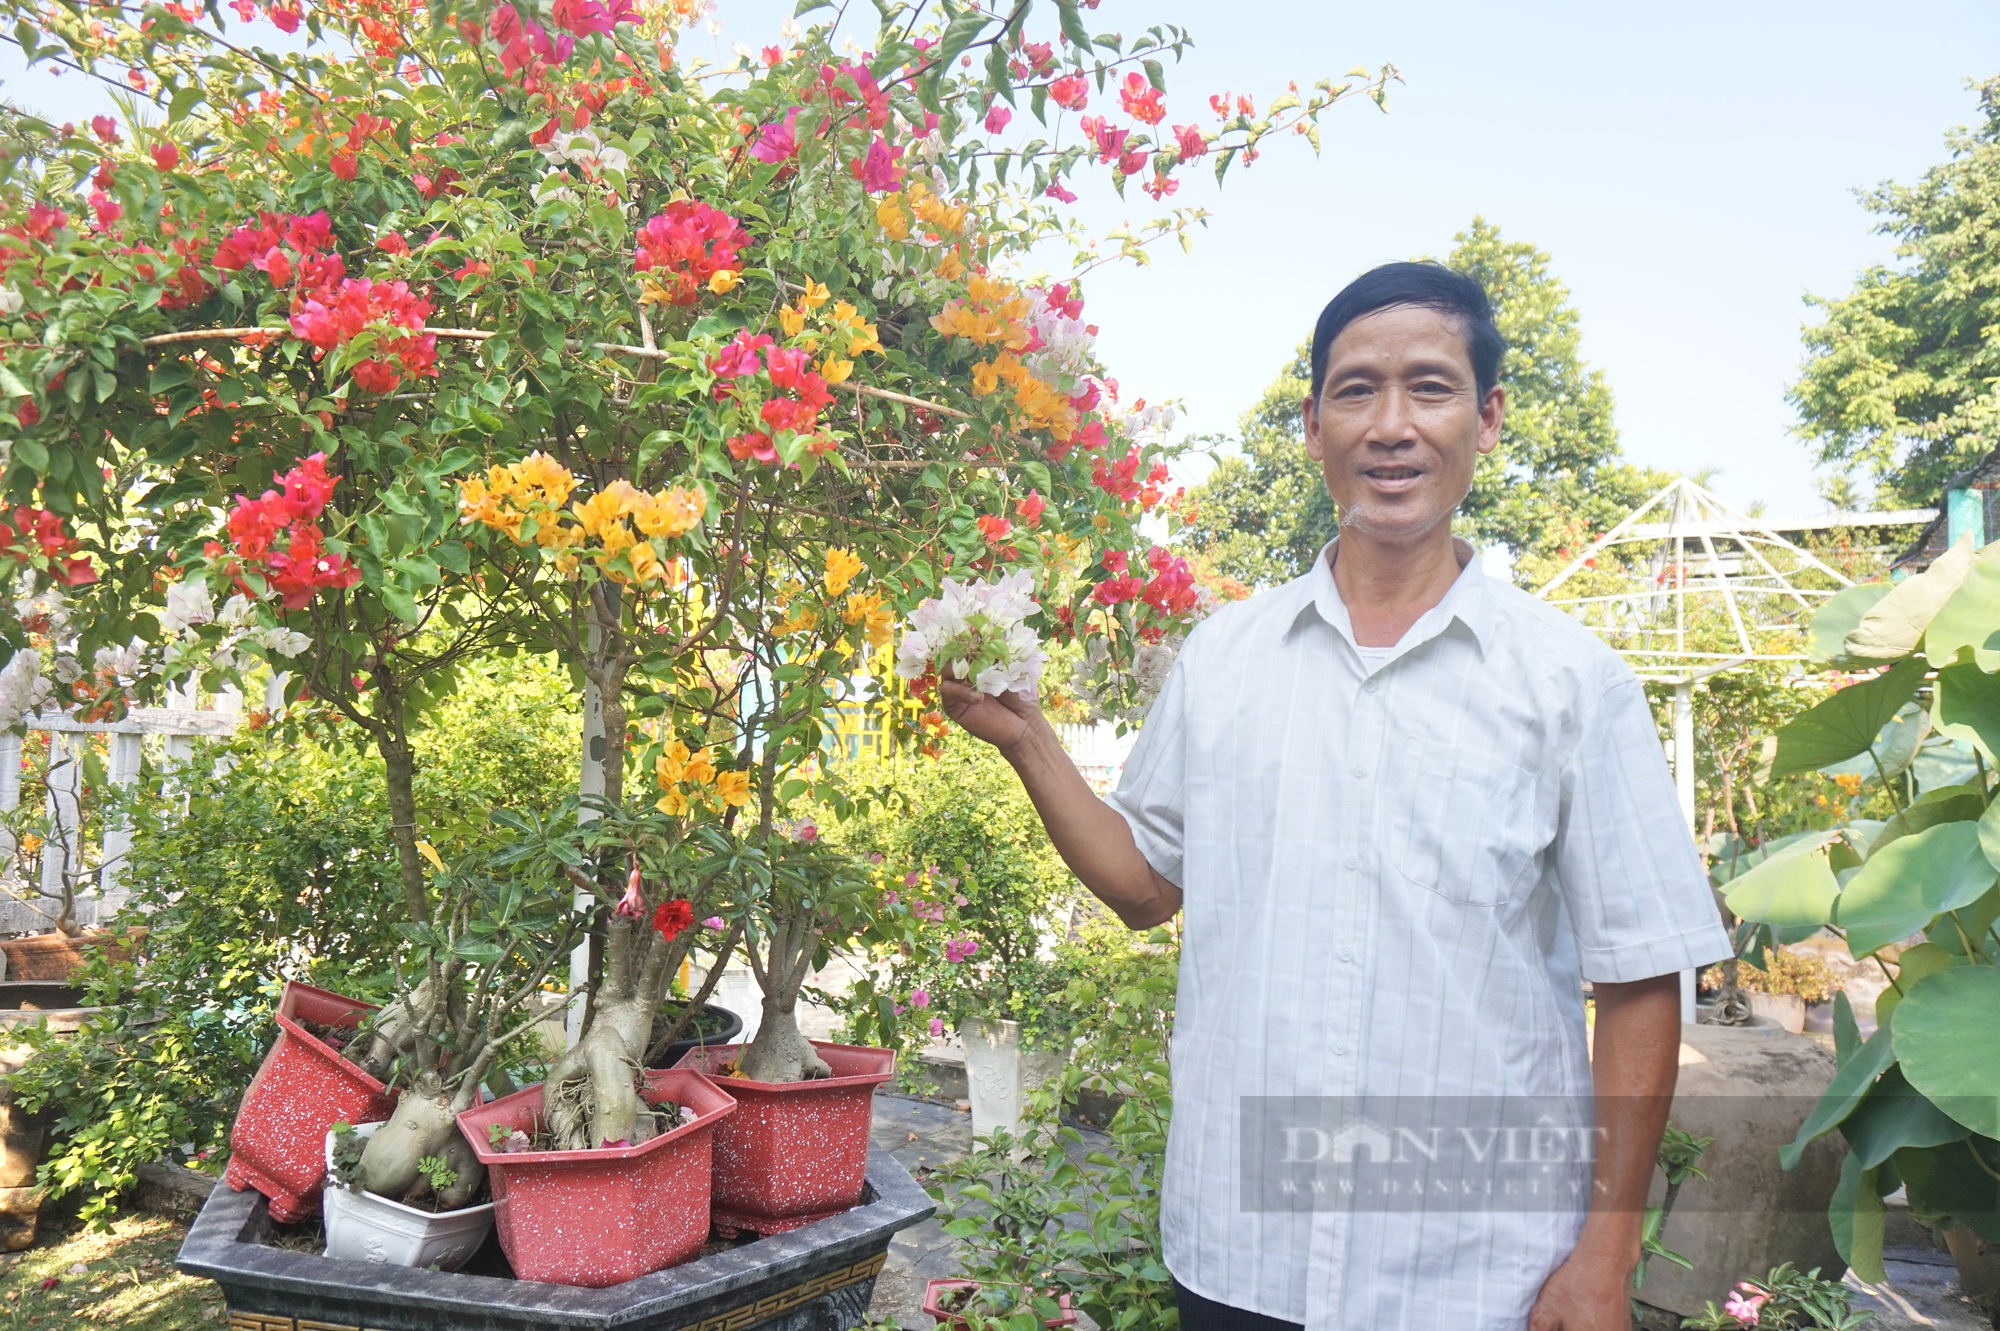 Vườn trồng hoa - cây cảnh ai ngang qua cũng khen, một nông dân Quảng Nam có thu nhập khấm khá - Ảnh 1.